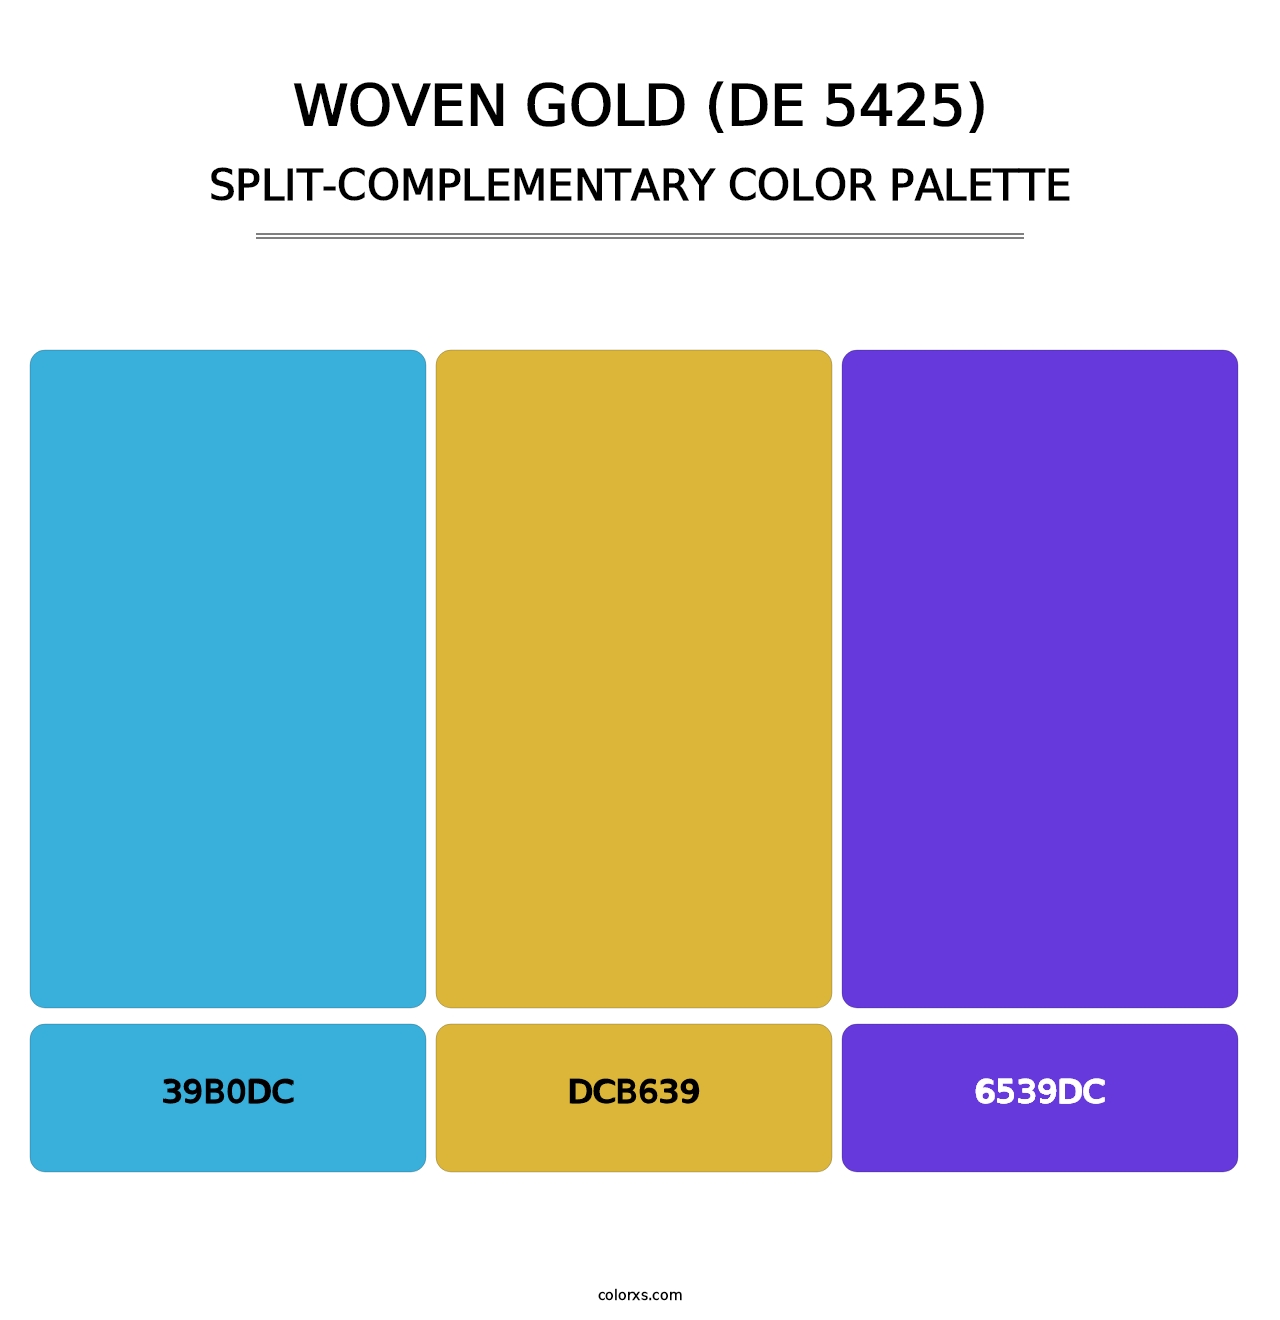 Woven Gold (DE 5425) - Split-Complementary Color Palette